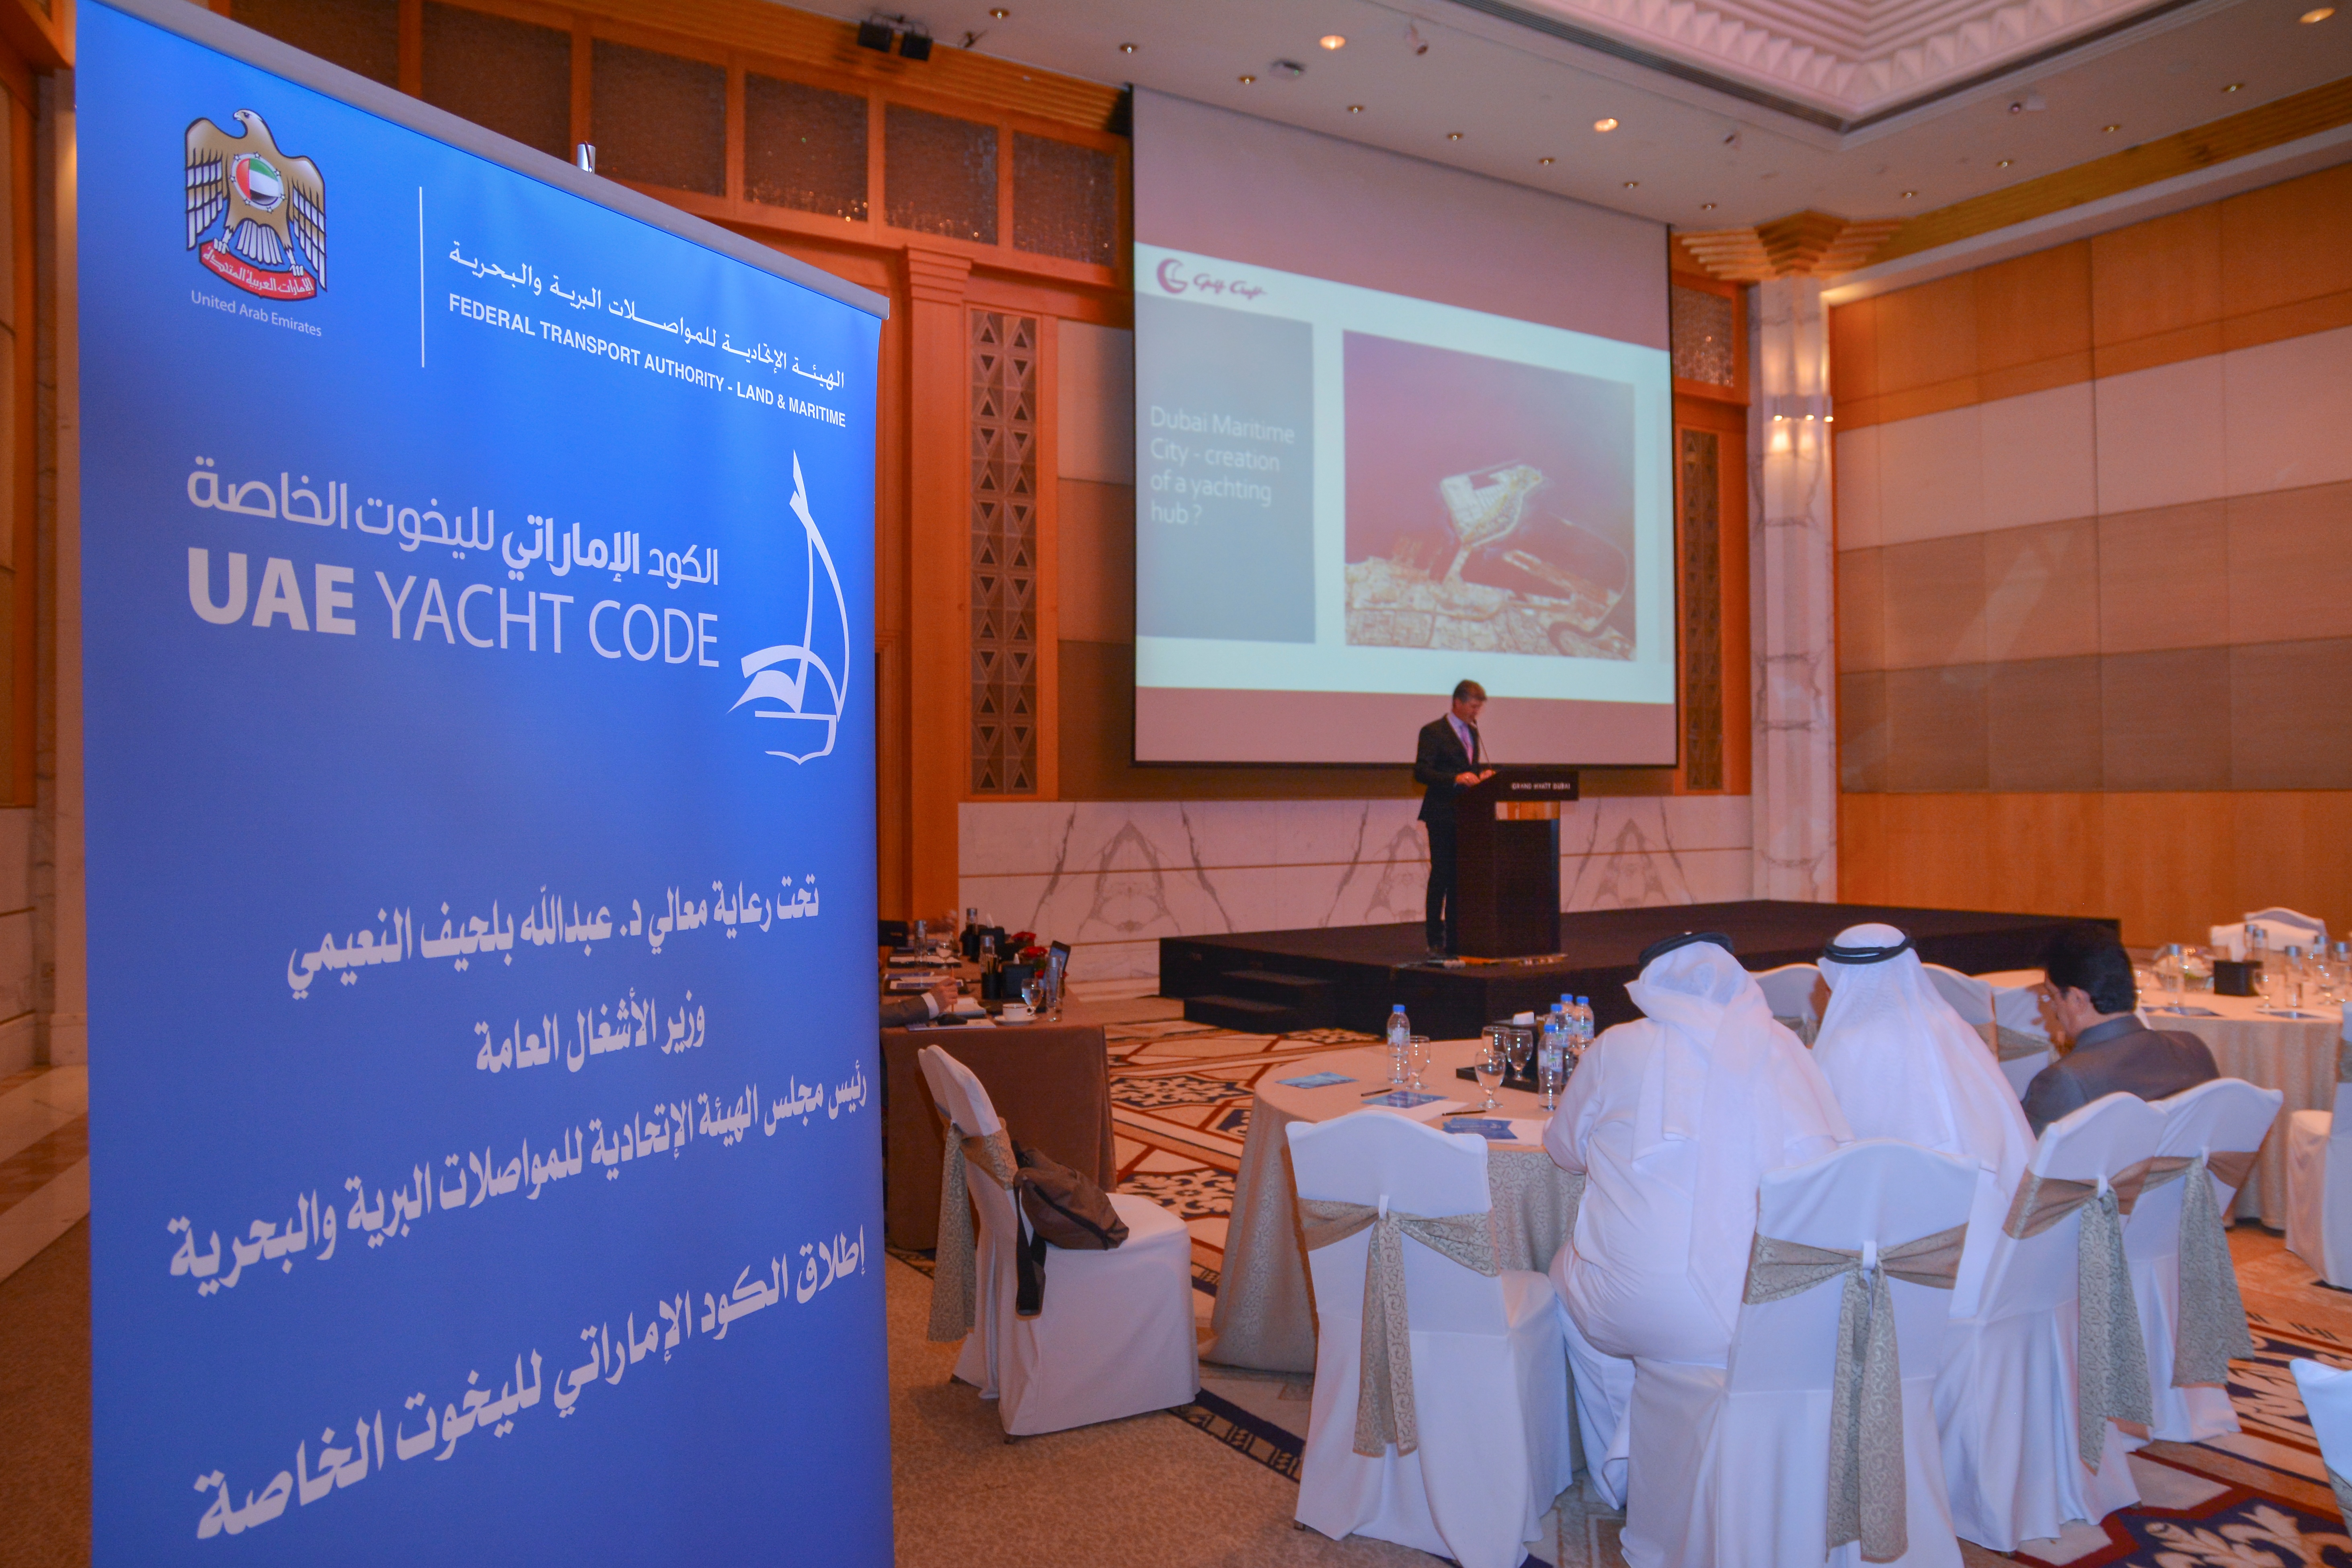 Эрвин Бампс, исполнительный директор компании Gulf Craft, на конференции, посвященной закону ОАЭ "О яхтах"